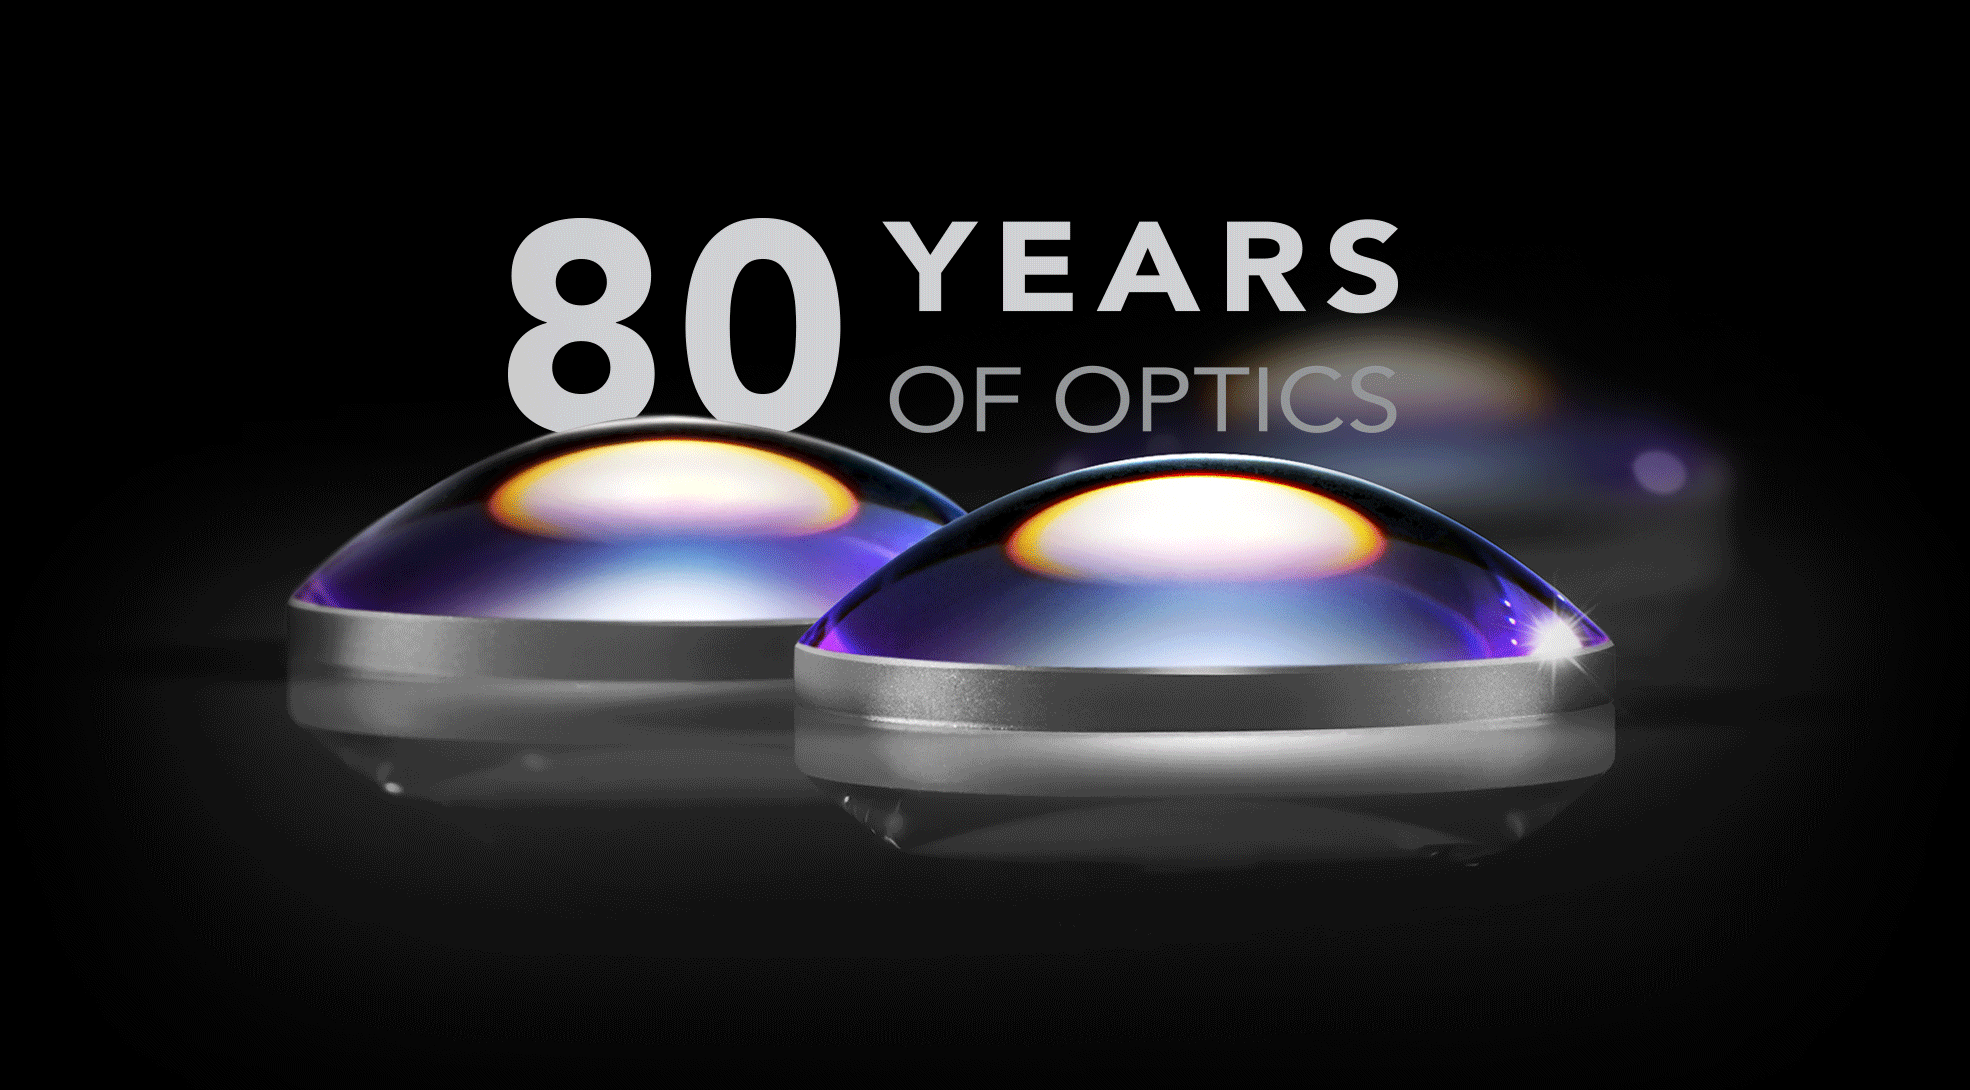 80 years of optics